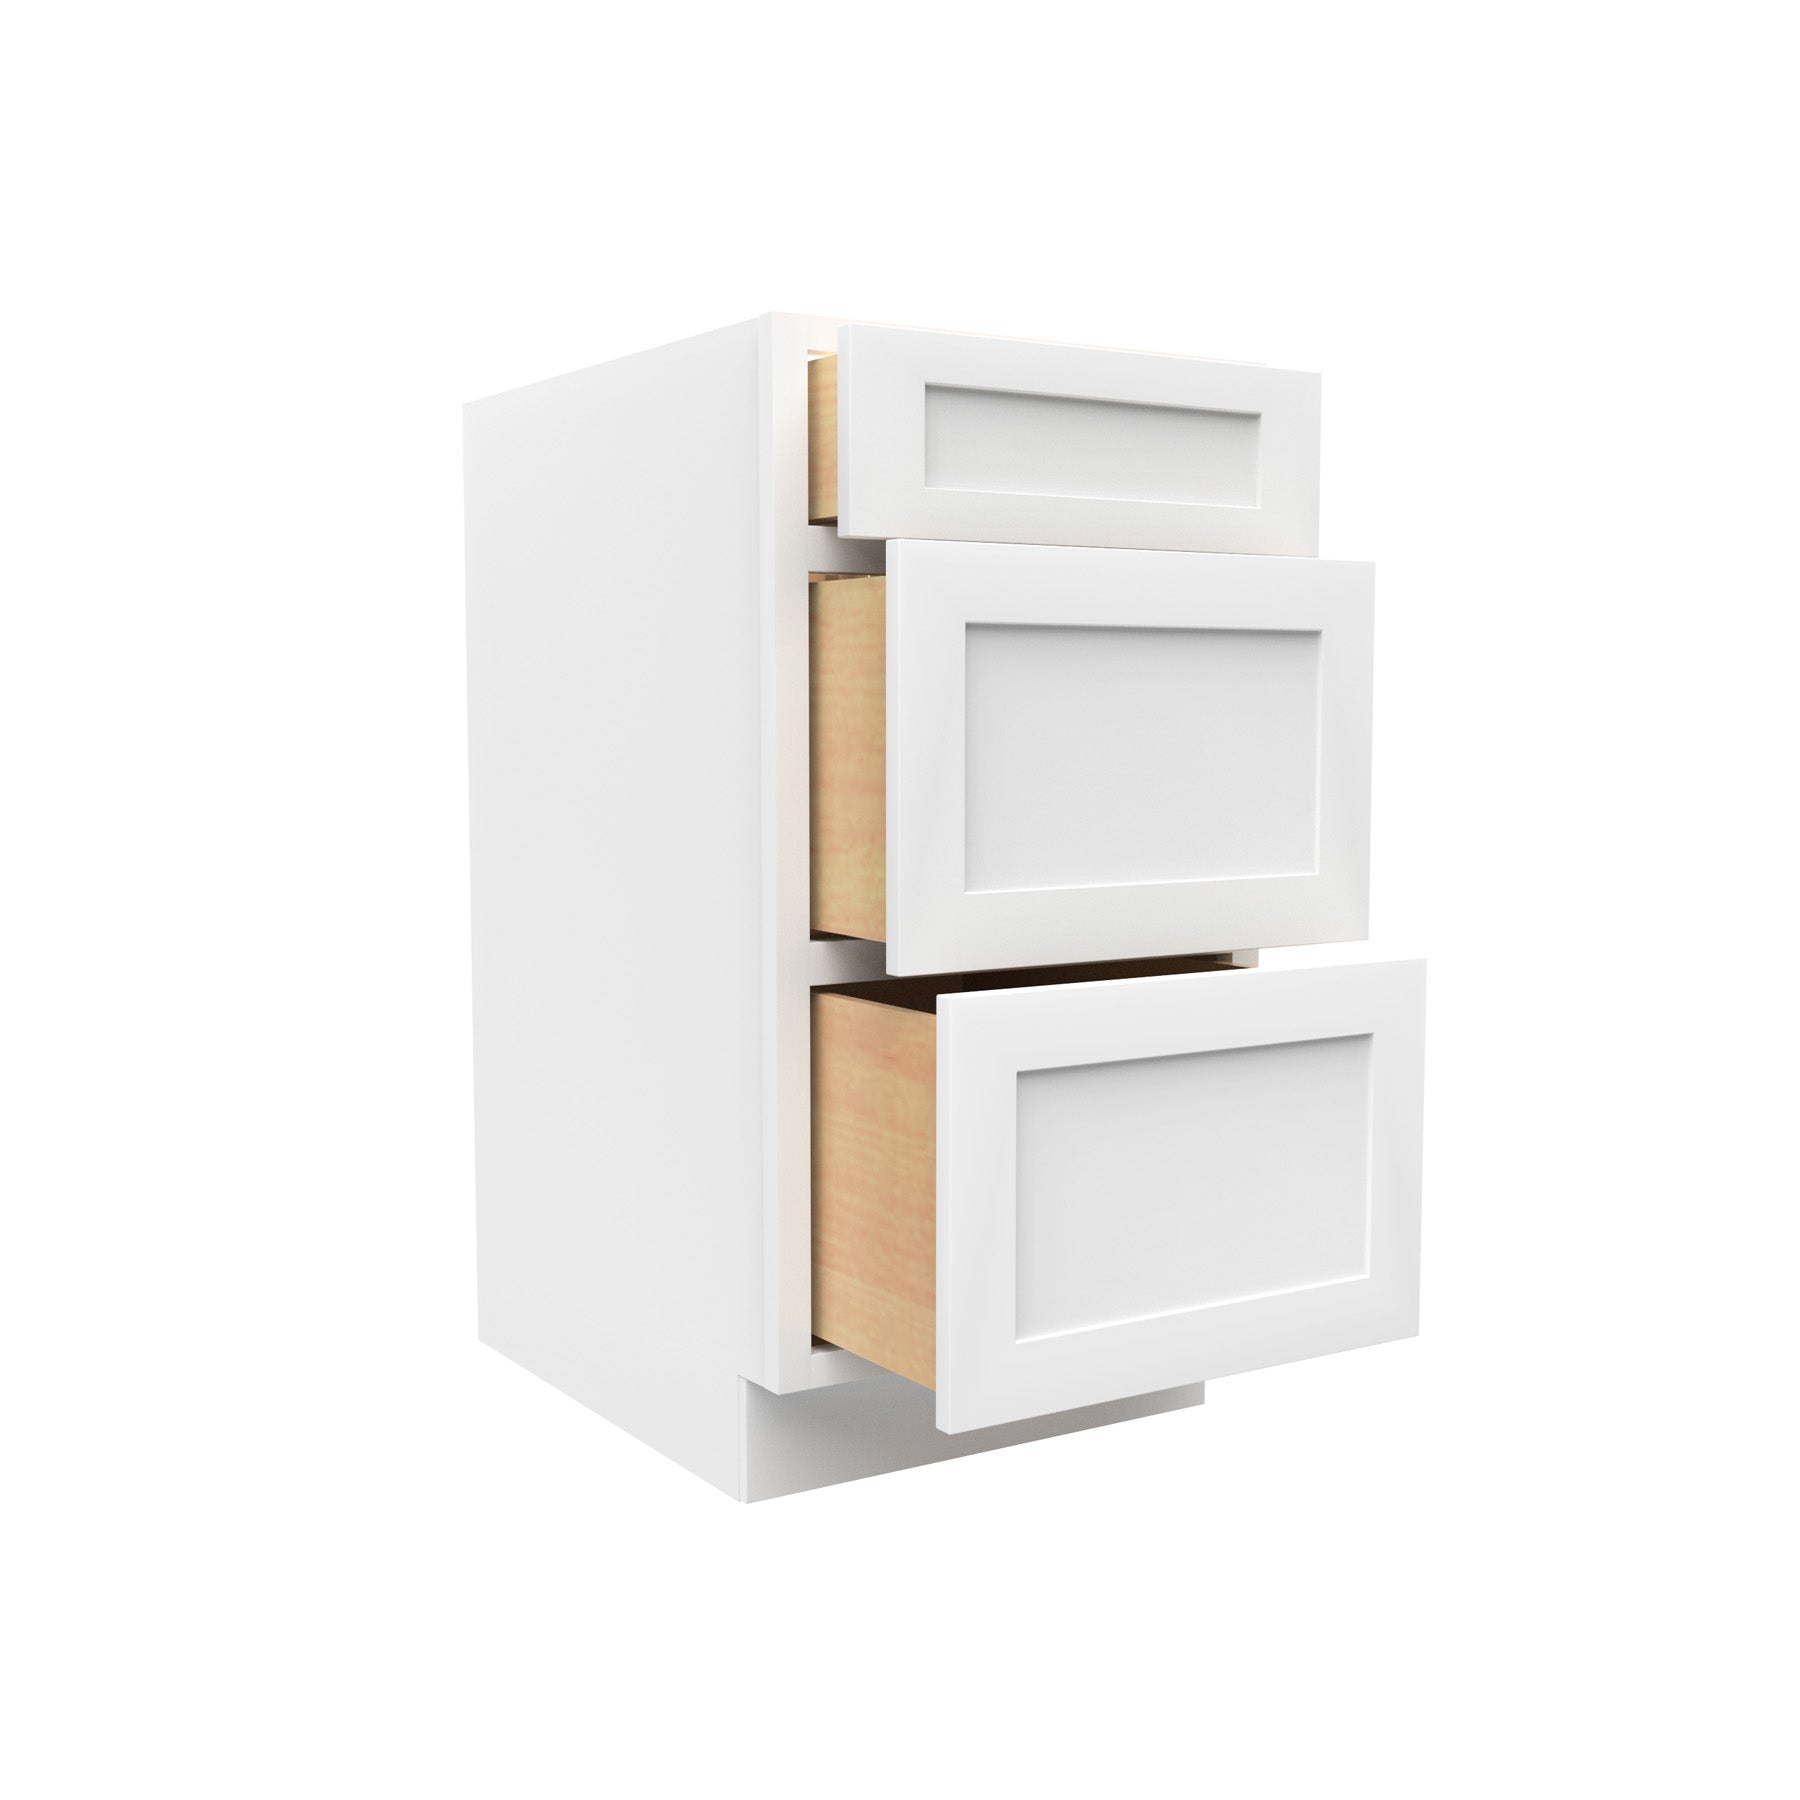 RTA - Elegant White - 3 Drawer Base Cabinet | 18"W x 34.5"H x 24"D